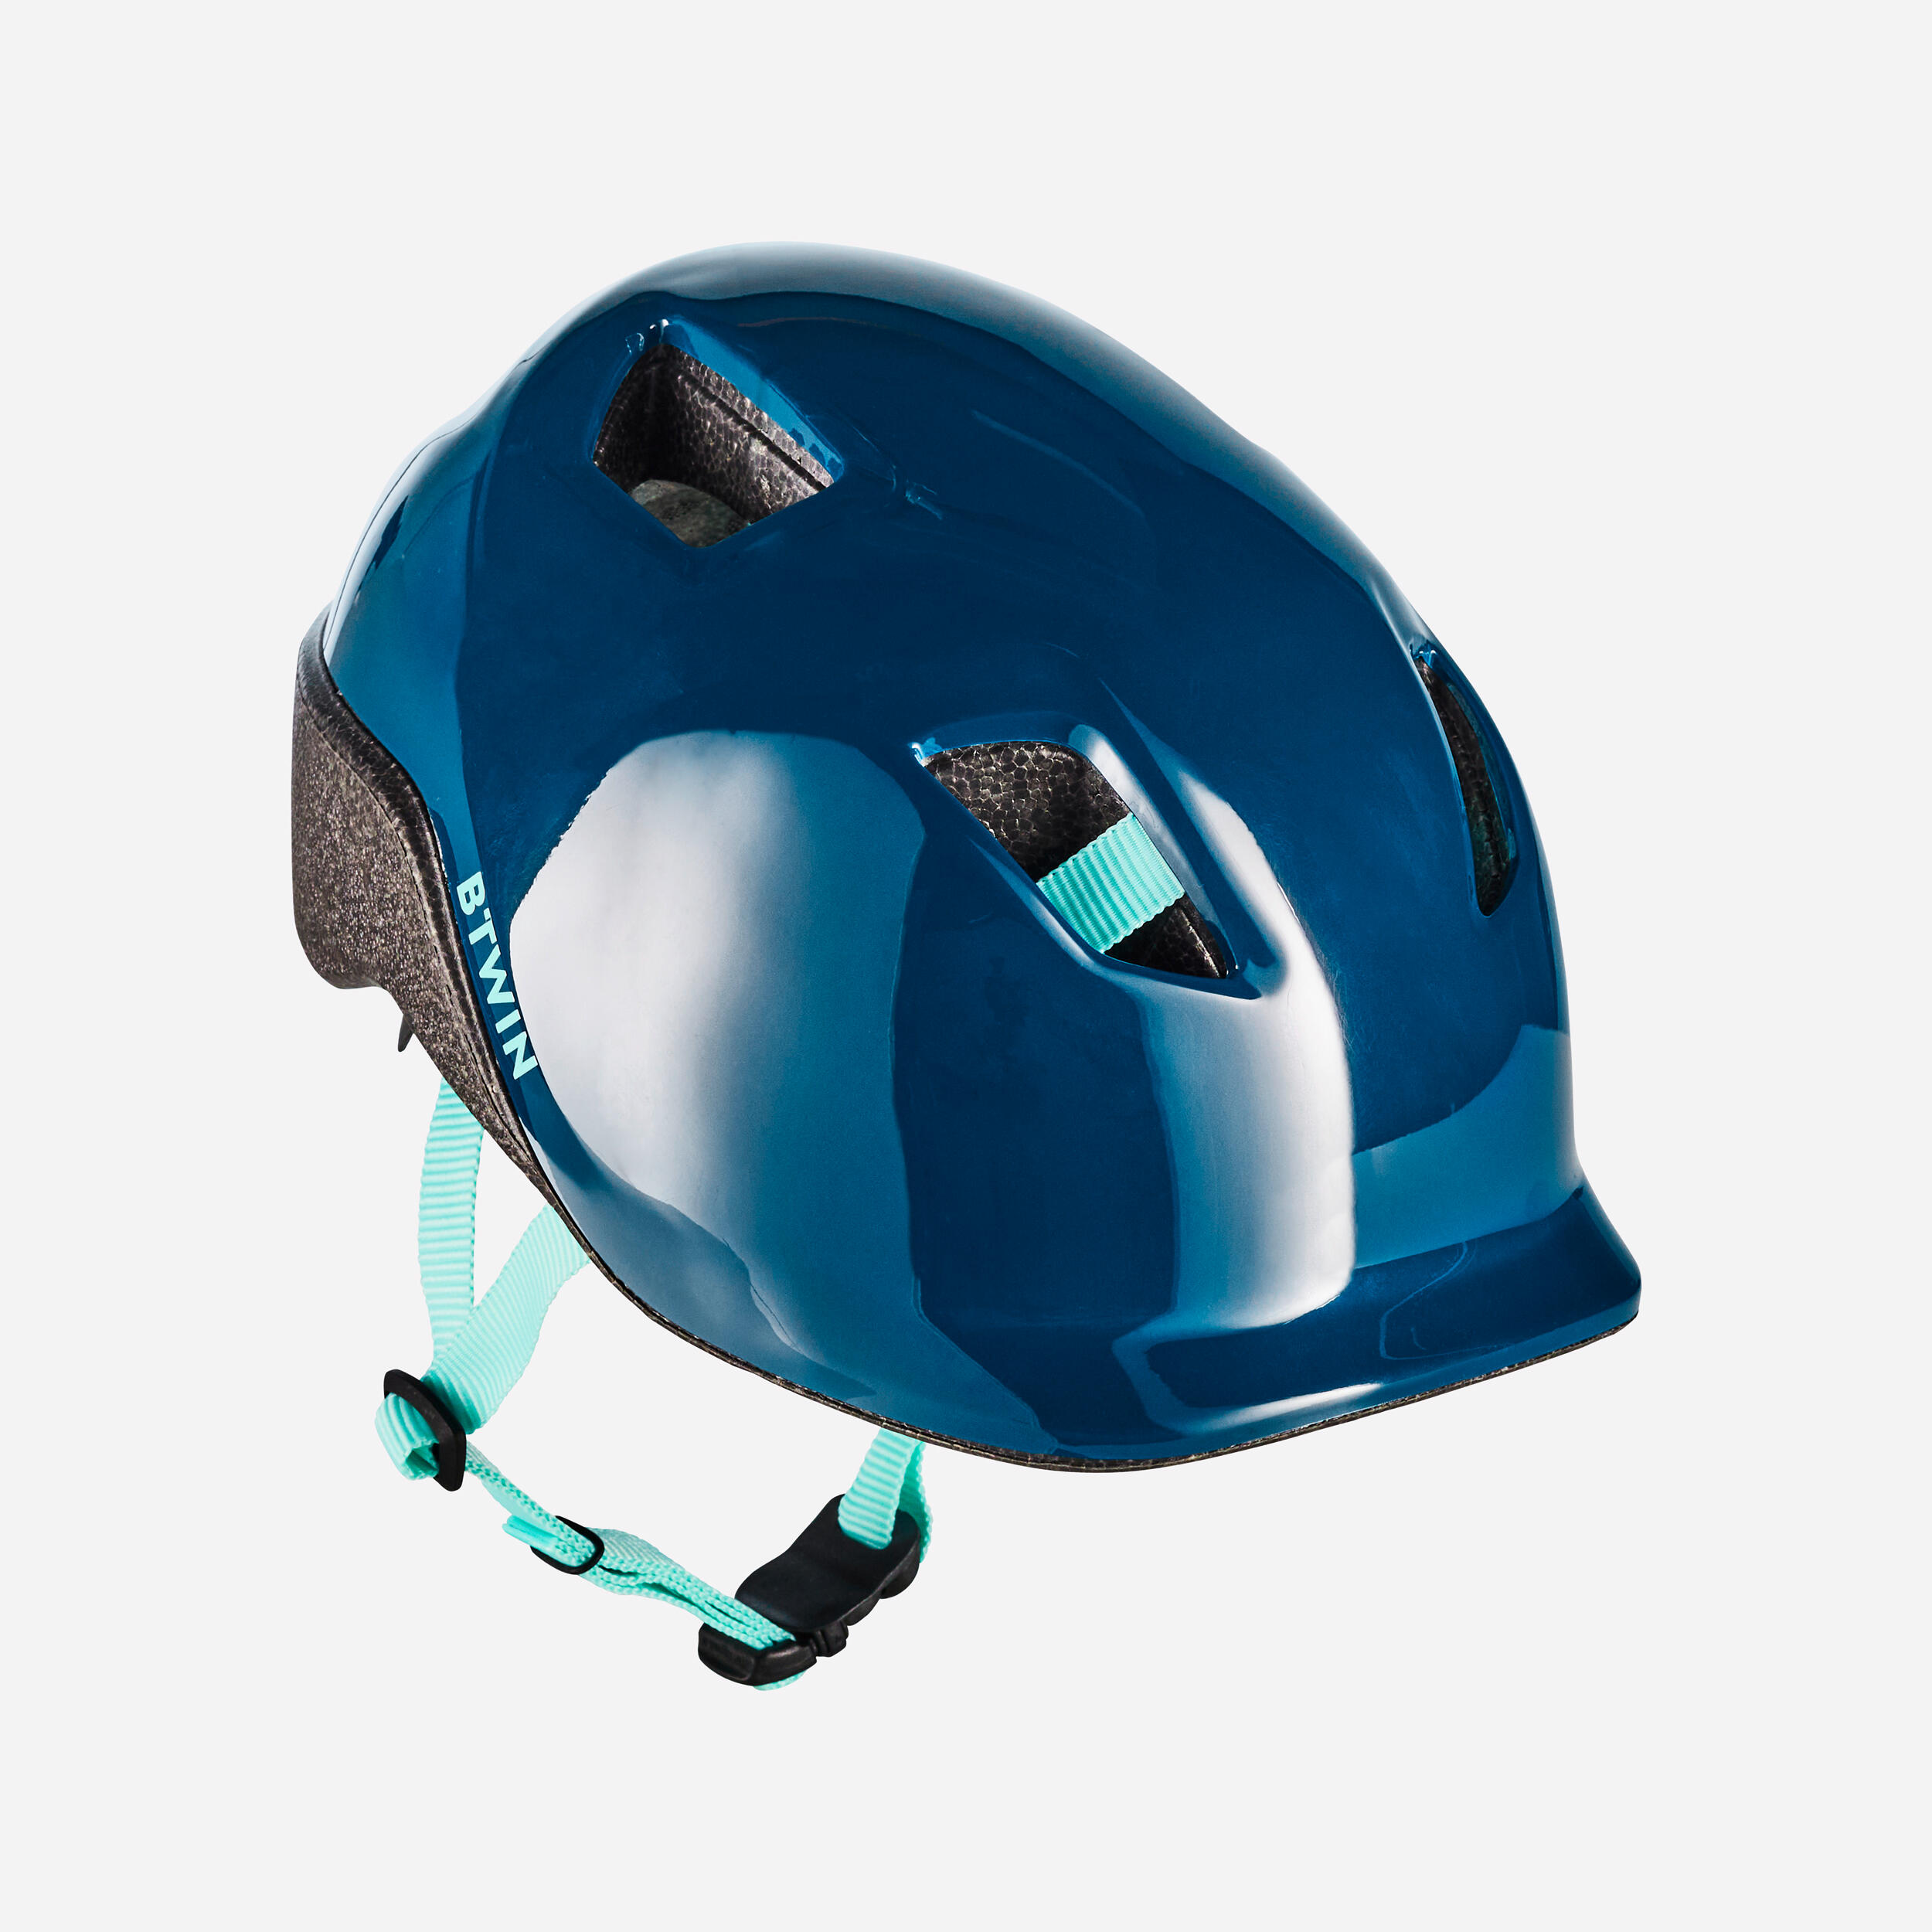 BTWIN 500 Children's Helmet - Blue